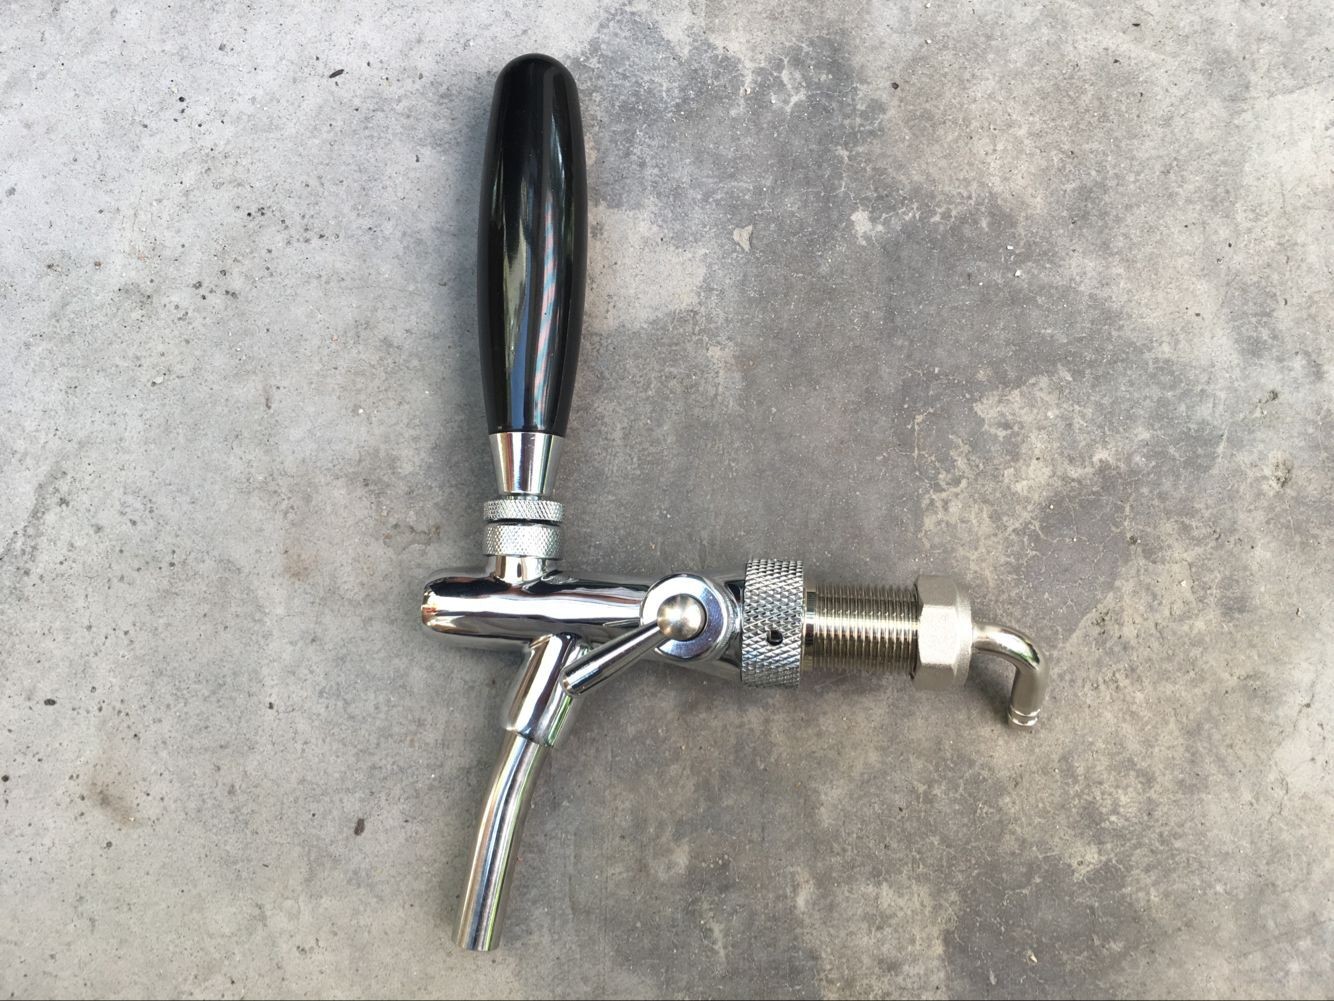 Beer tap beer faucet  used in kegerator keg cooler, bar hotel beer tower